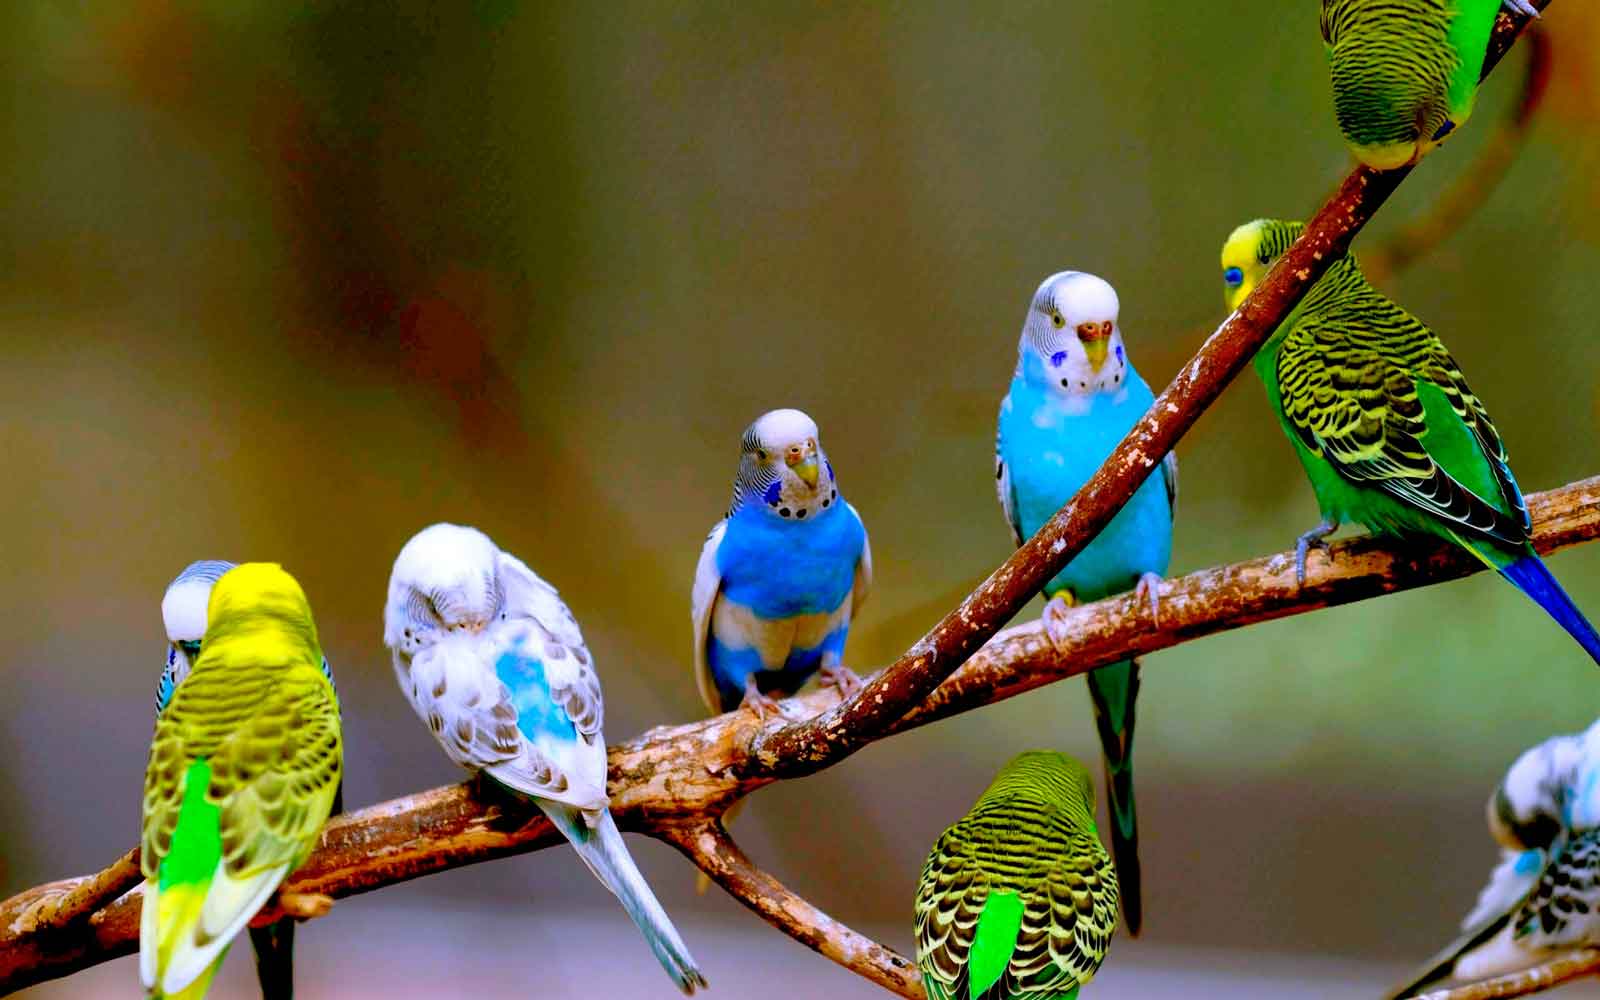 Волнистый попугай: все о птицах, описание, фото, где родина пернатых, разновидности, уход и содержание в домашних условиях